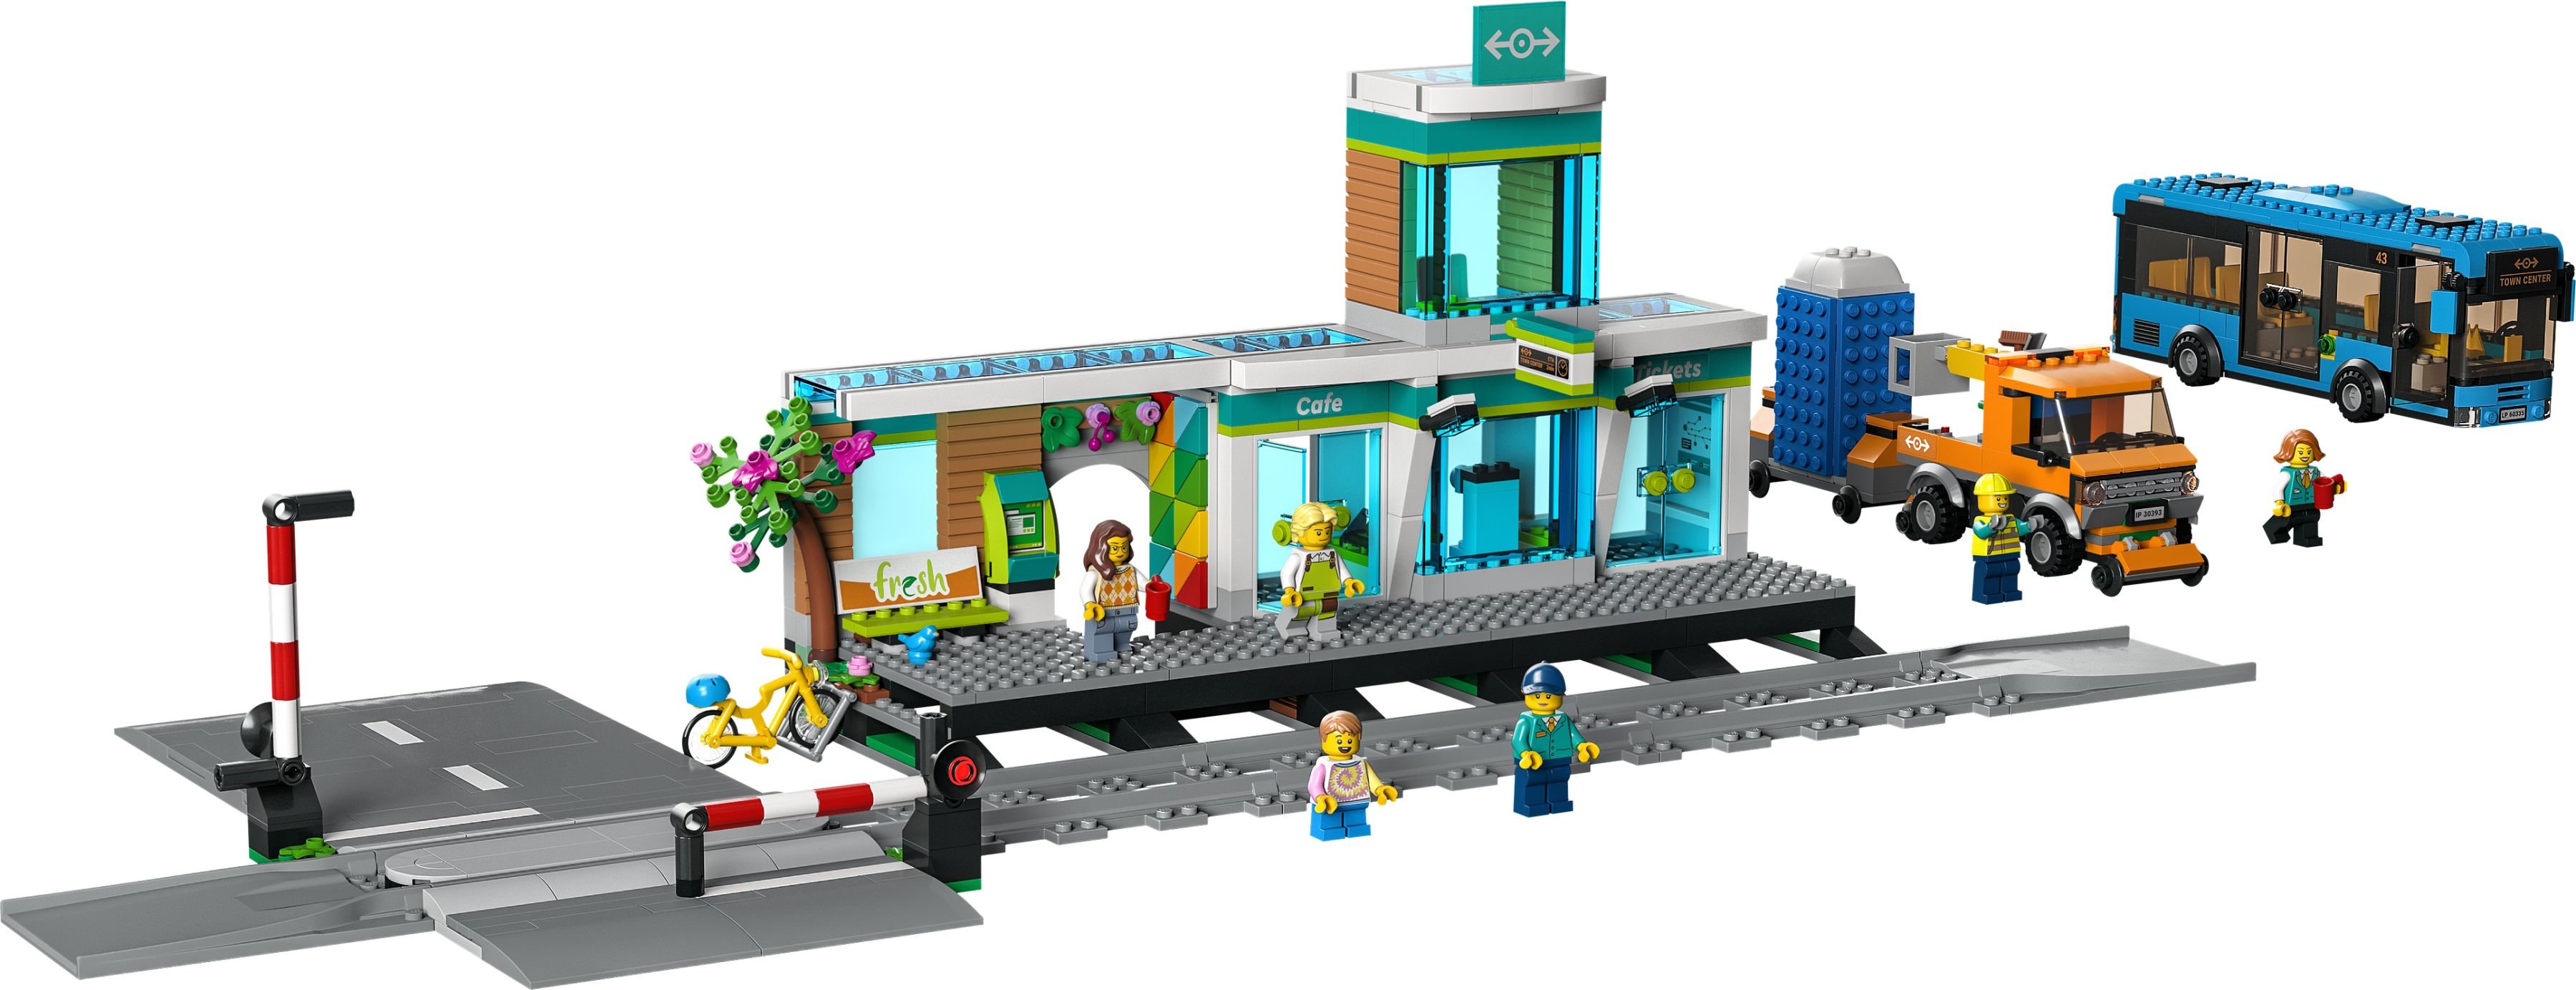 LEGO City 60335 Bahnhof